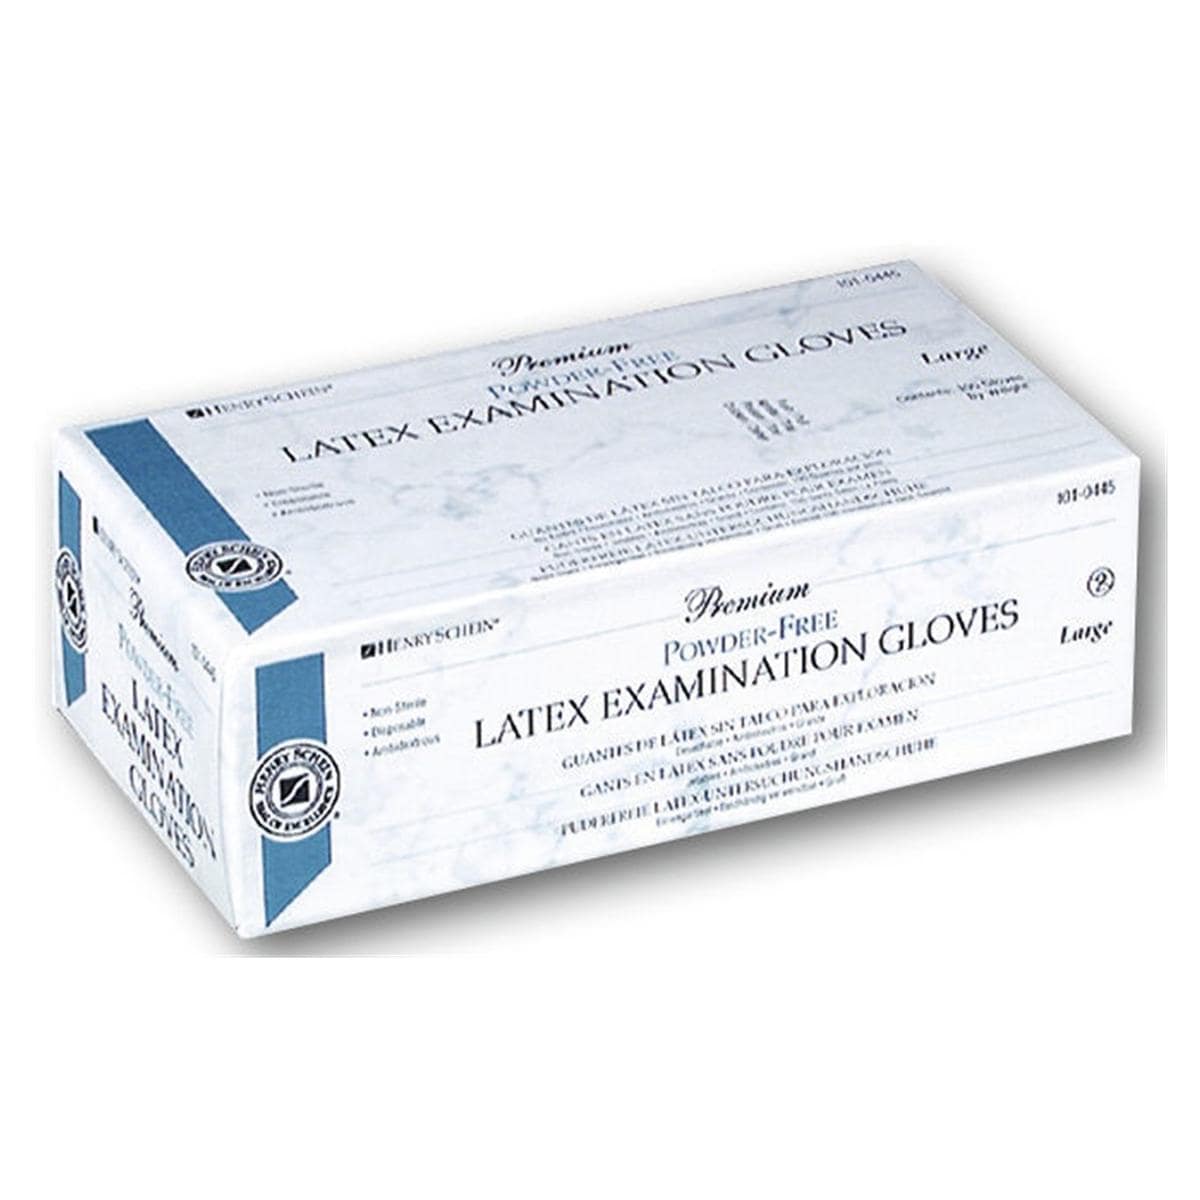 Premium Latex Powder Free Gloves - L - 100 stuks